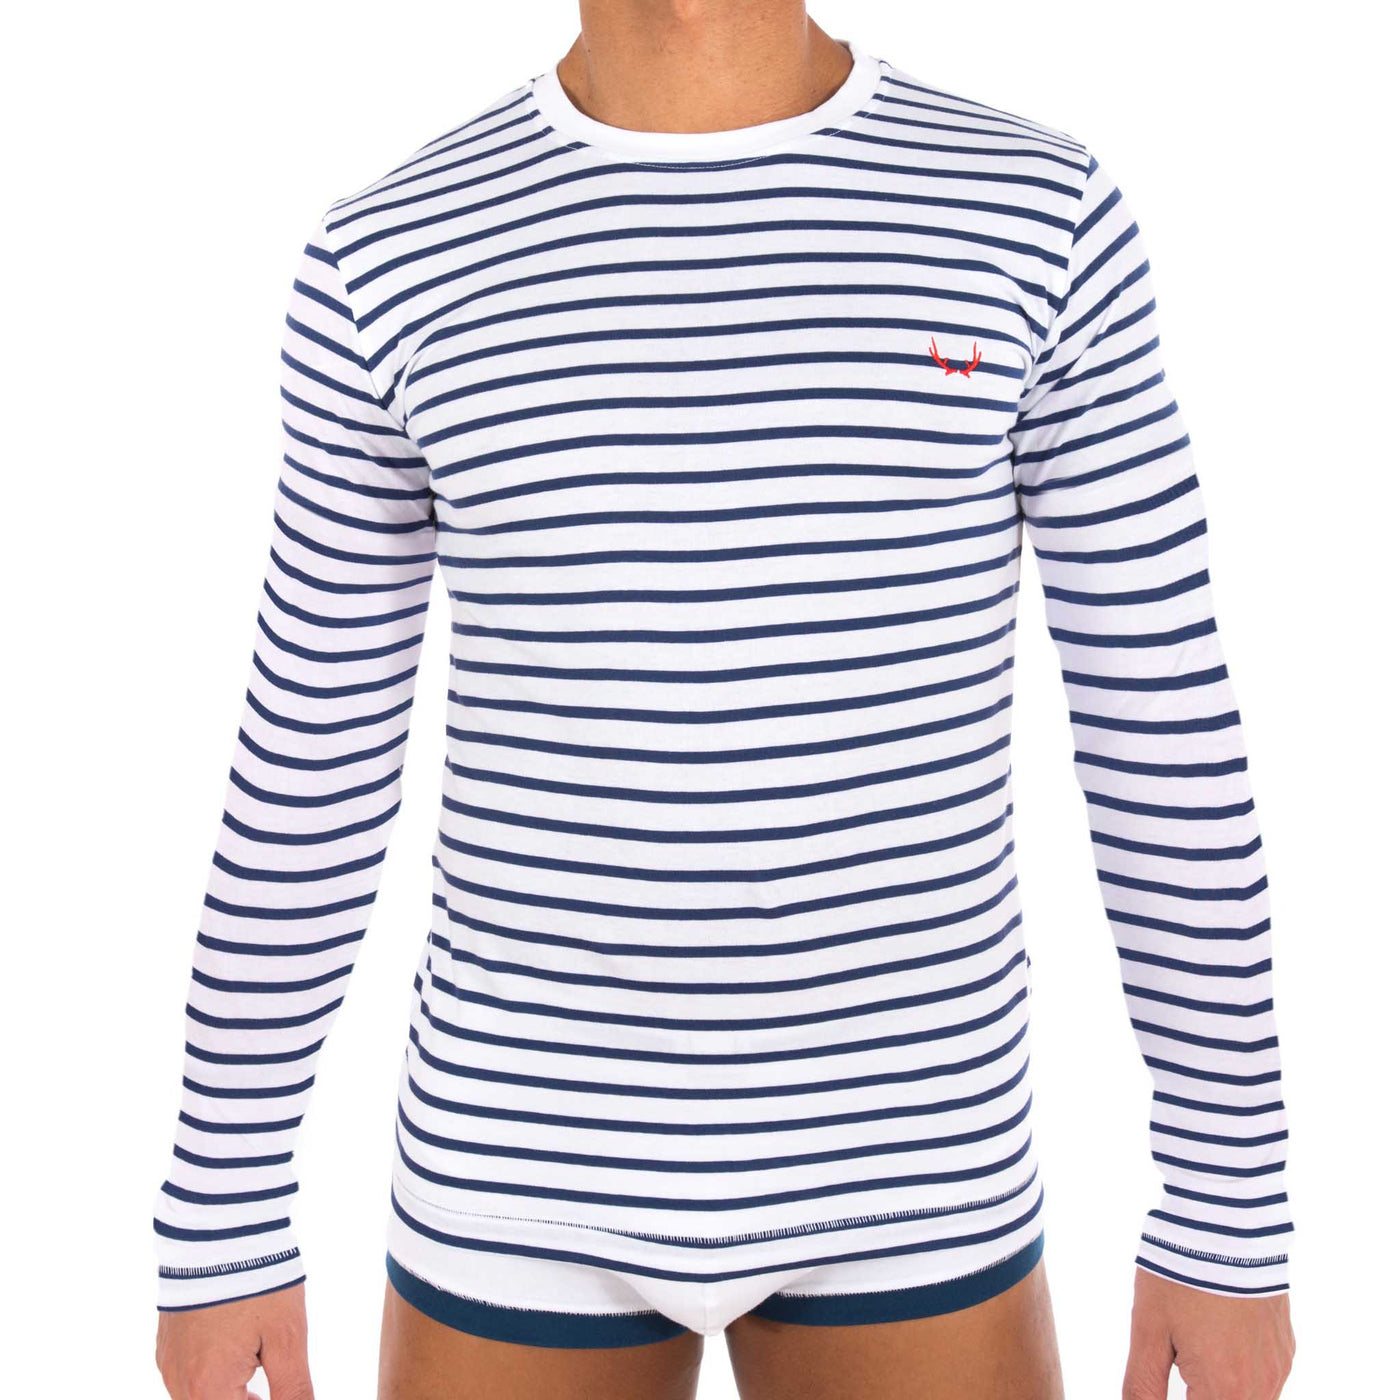 Long sleeves white T-shirt for men - navy stripes